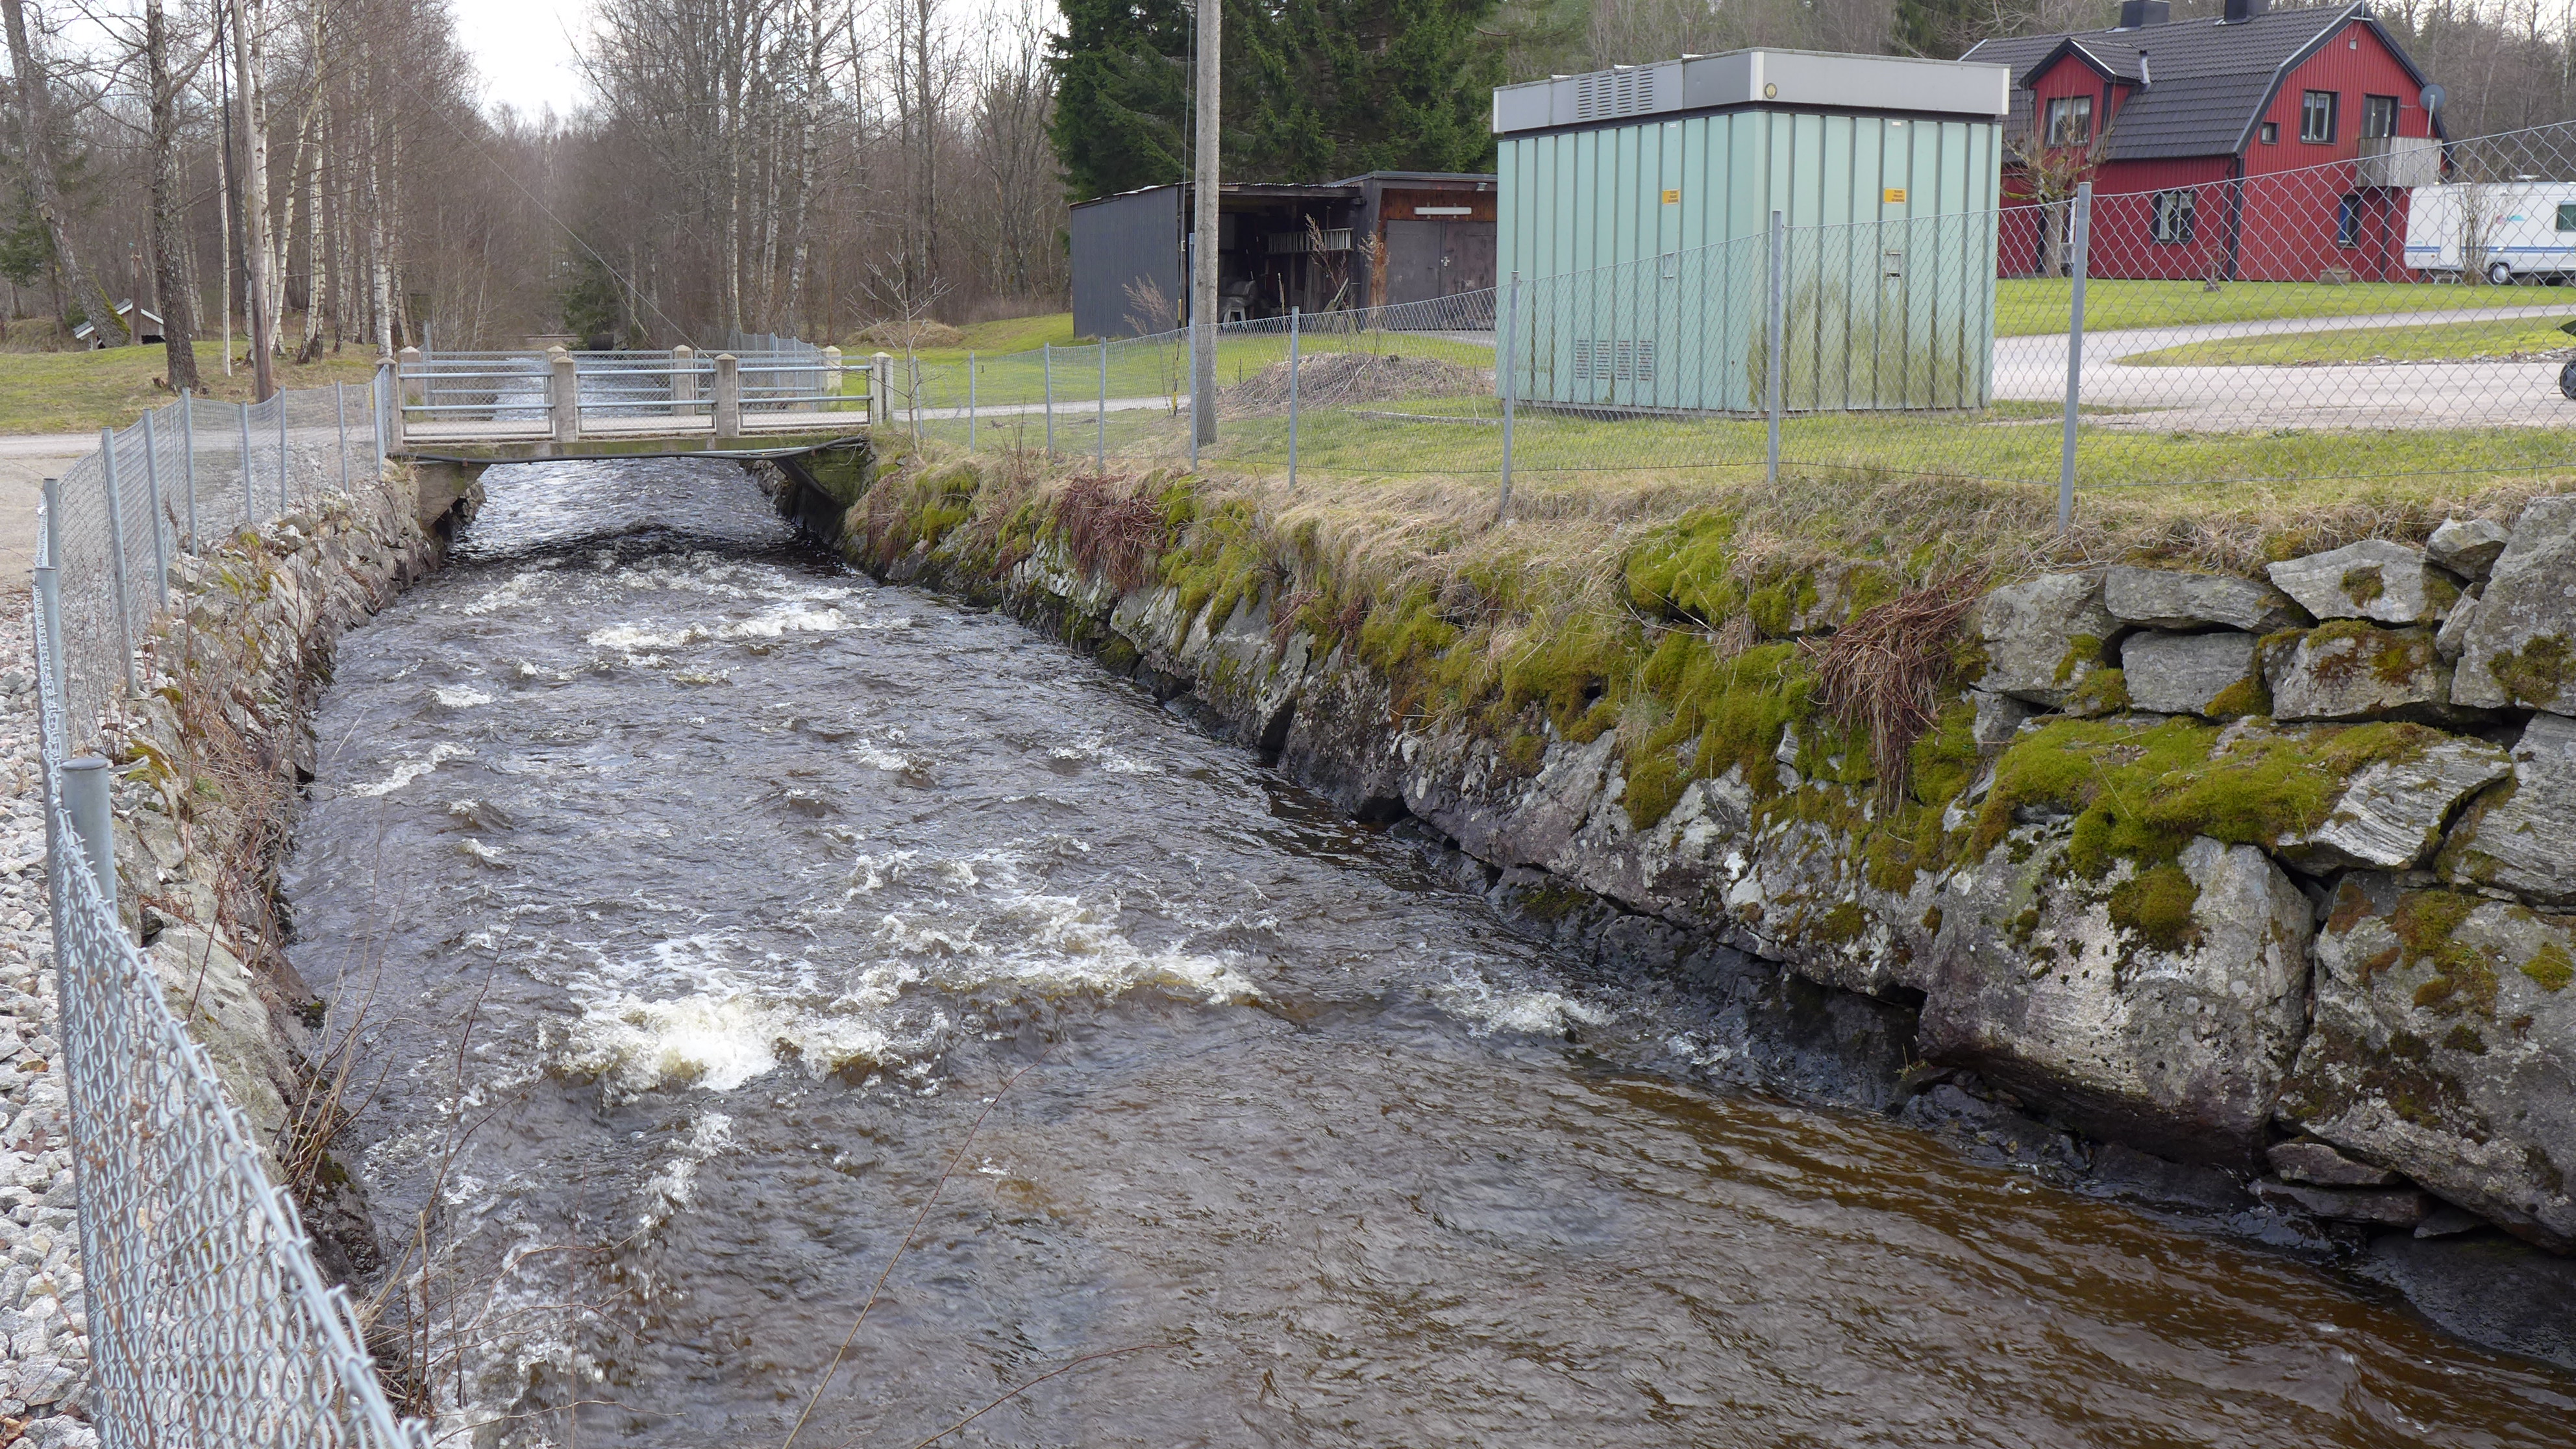 Efter den 770 meter långa Skäggaredstunneln fortsätter vattnet vidare i en öppen kanal/fåra som mynnar ut i Viskan, cirka en kilometer uppströms intaget till kraftverket. 
